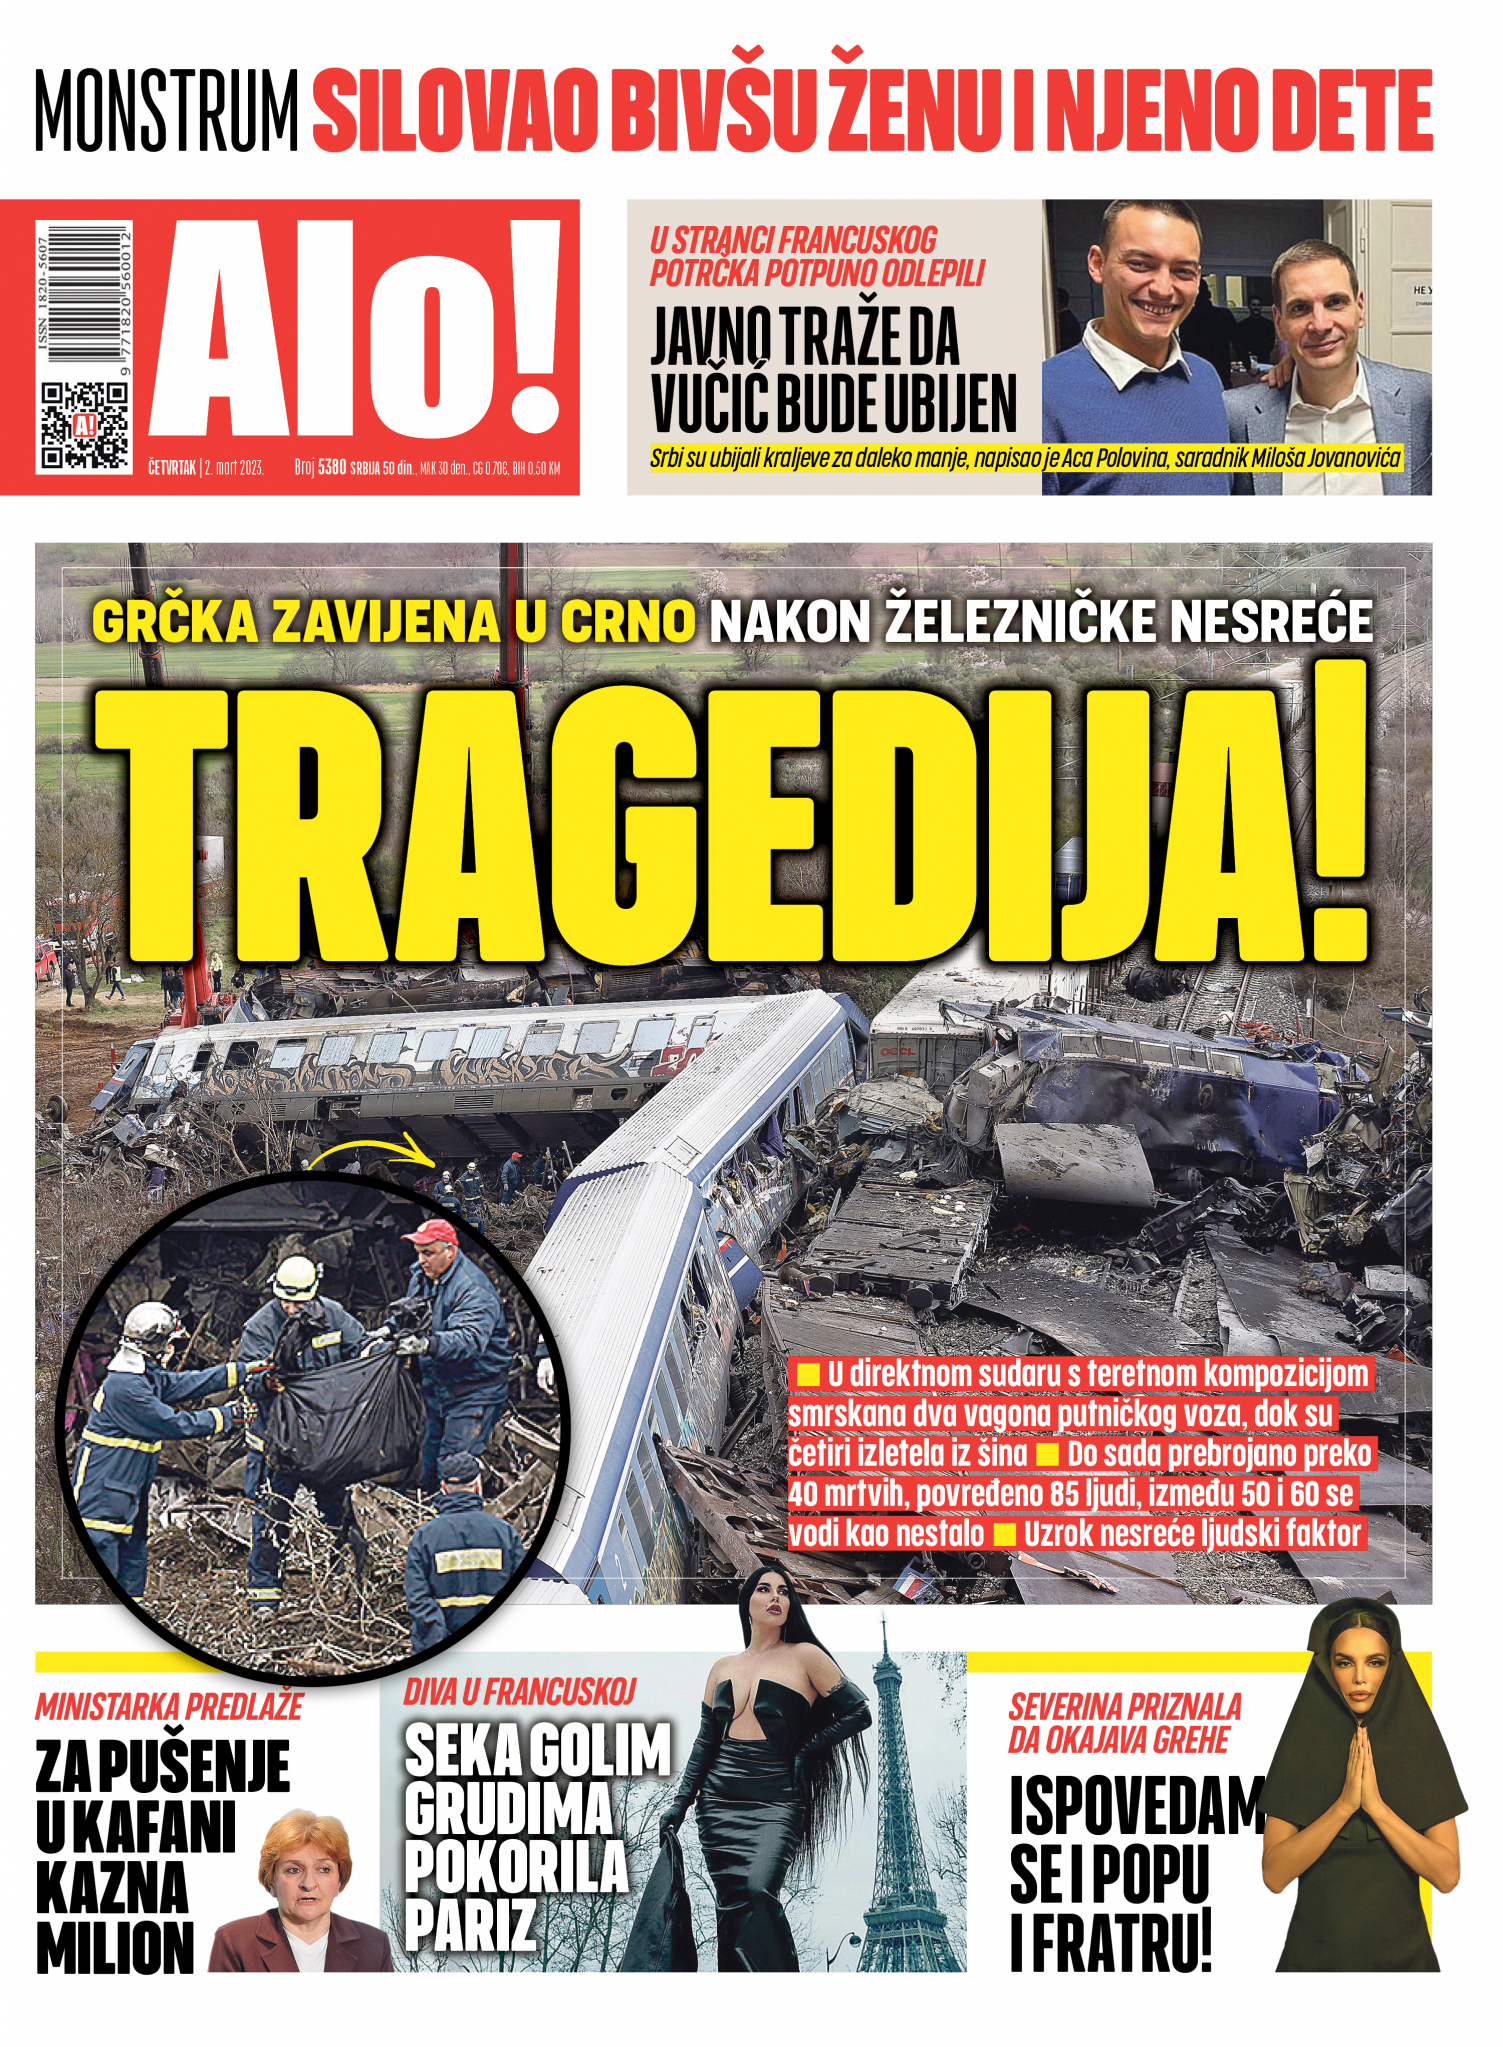 TRAGEDIJA! Grčka zavijena u crno nakon železničke nesreće